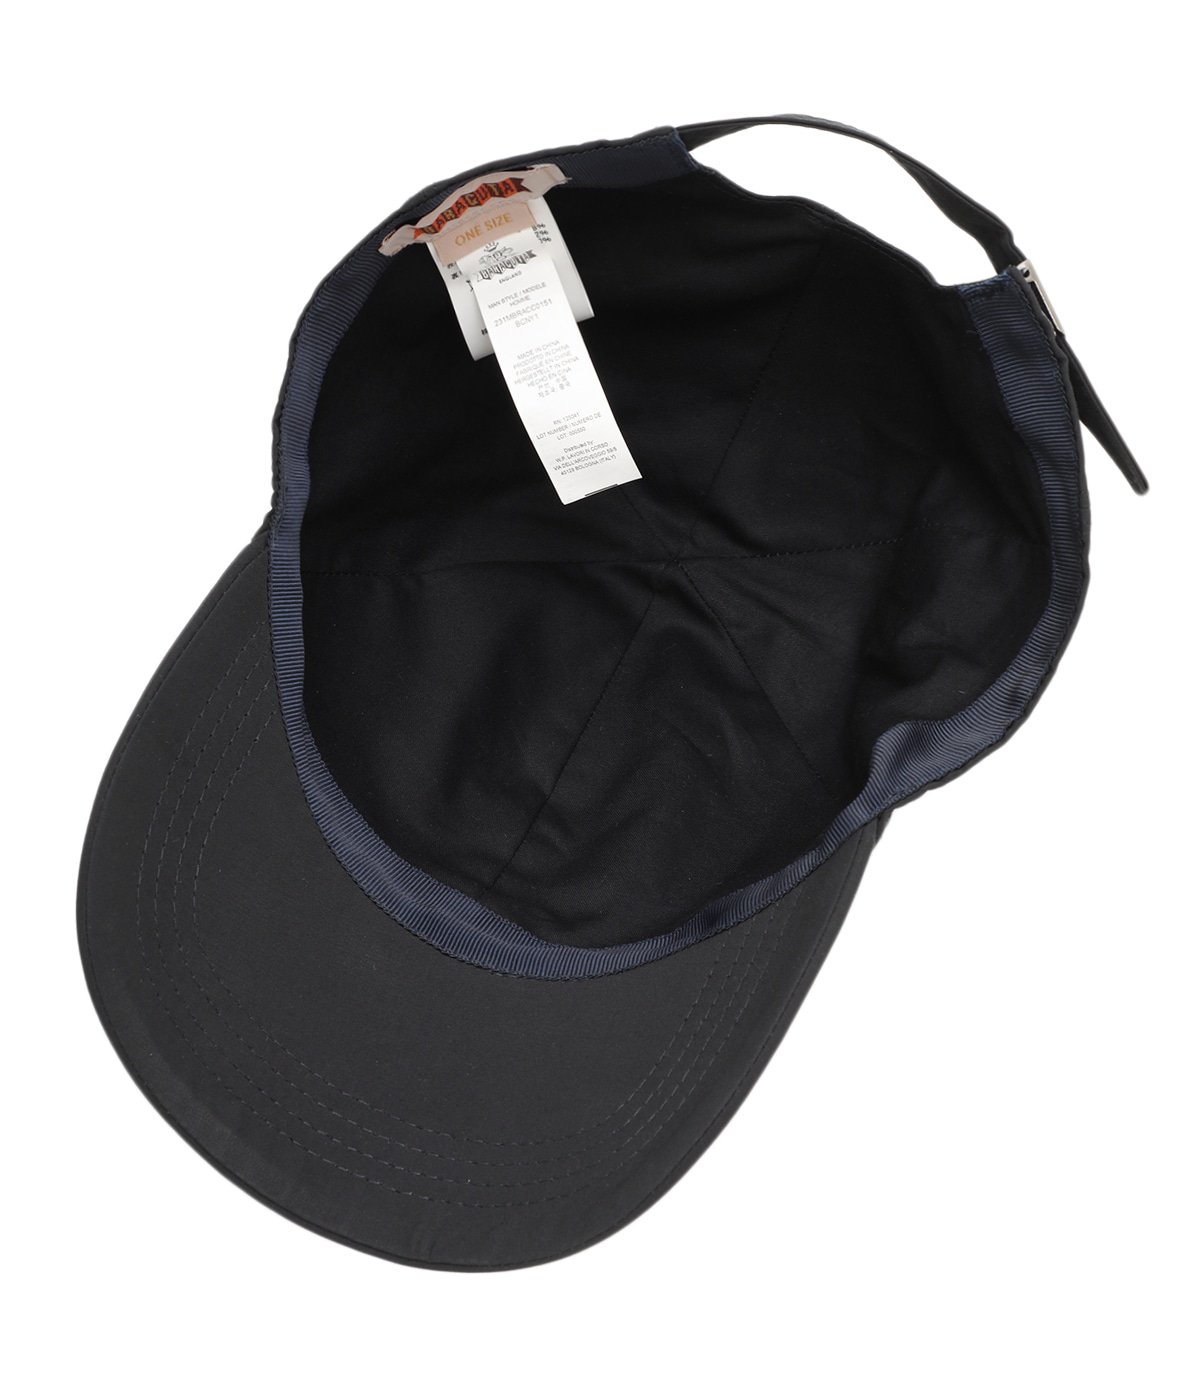 BASEBALL CAP | BARACUTA(バラクータ) / 帽子 キャップ (メンズ)の通販